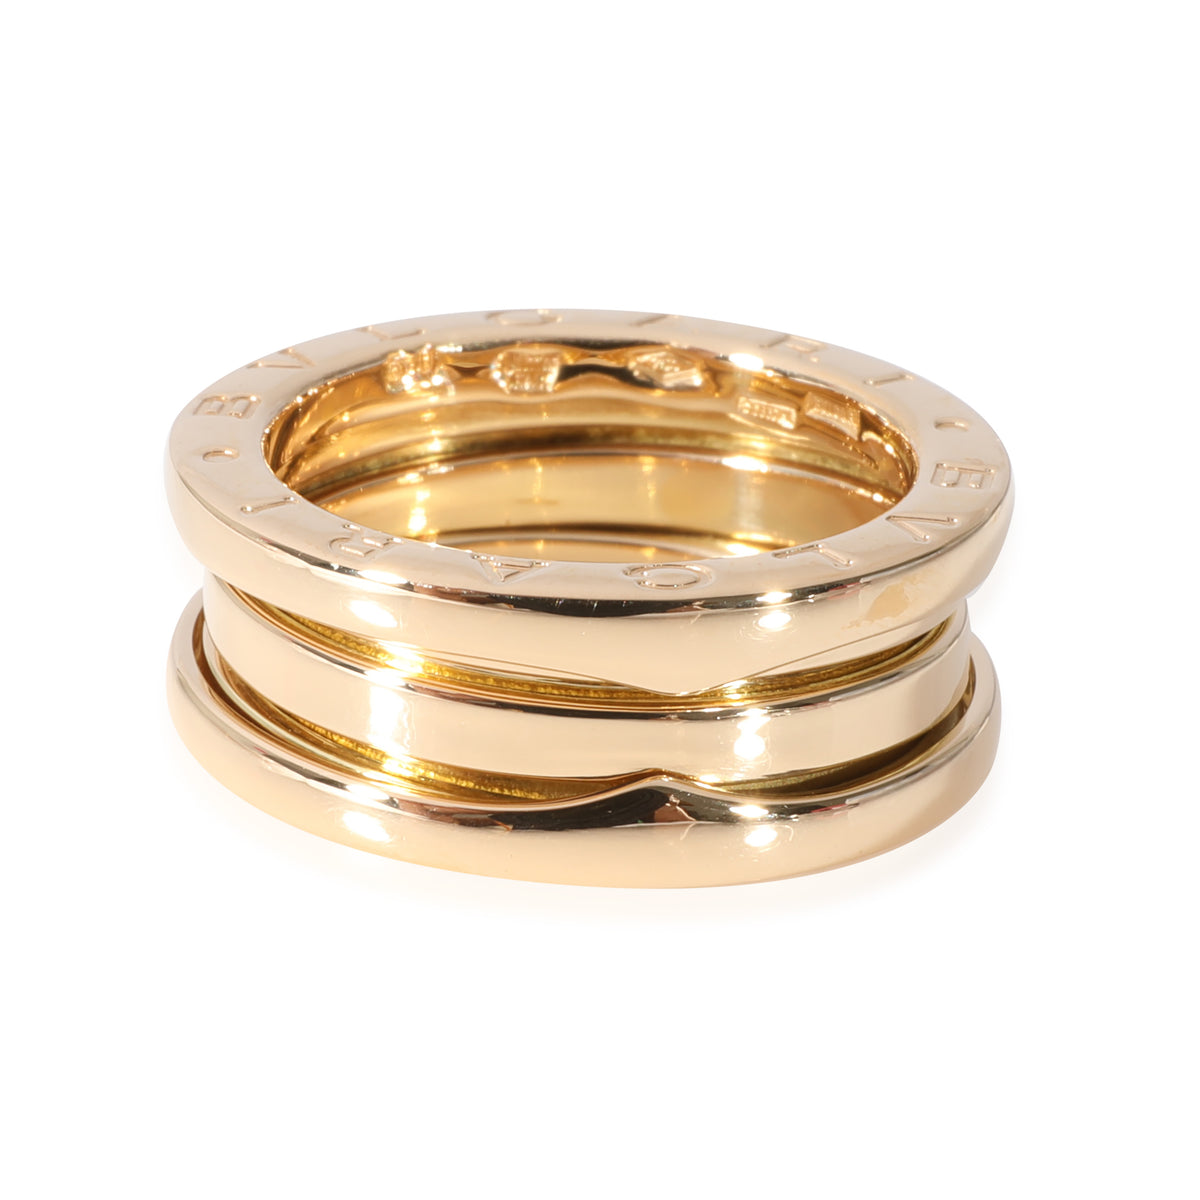 BVLGARI B.zero1 Ring in 18k Yellow Gold